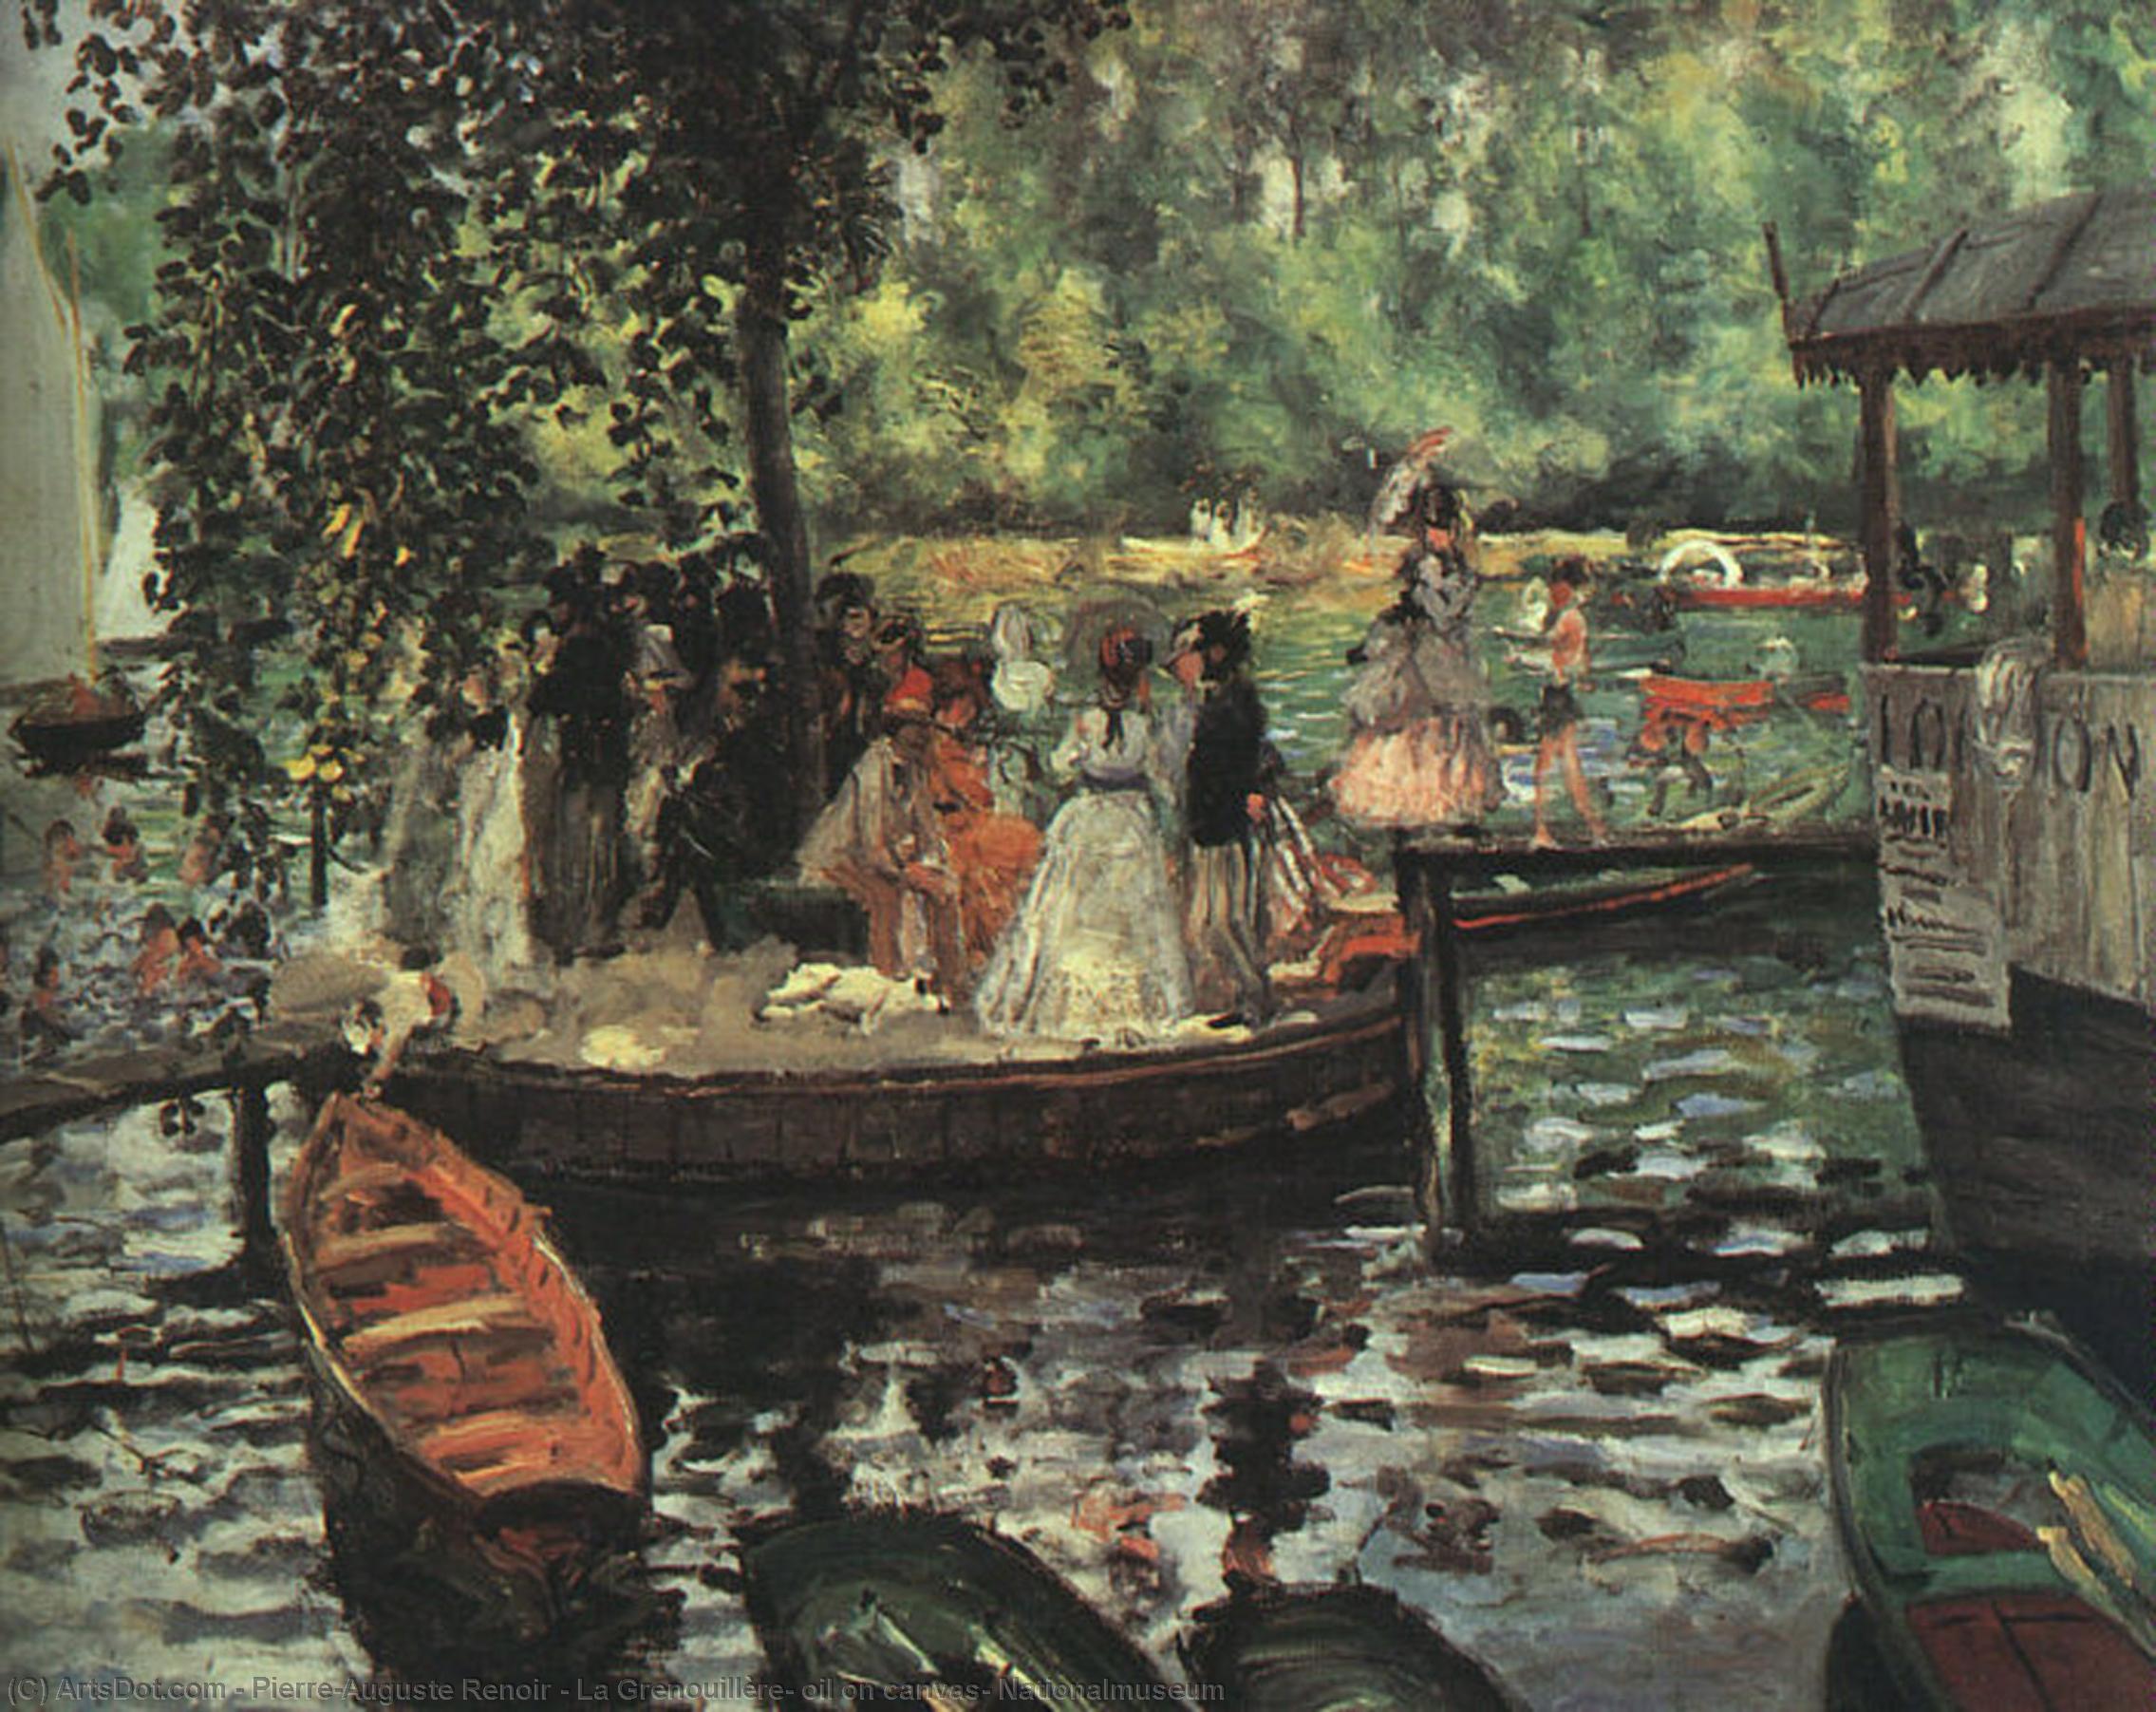 Wikioo.org - Bách khoa toàn thư về mỹ thuật - Vẽ tranh, Tác phẩm nghệ thuật Pierre-Auguste Renoir - La Grenouillère, oil on canvas, Nationalmuseum